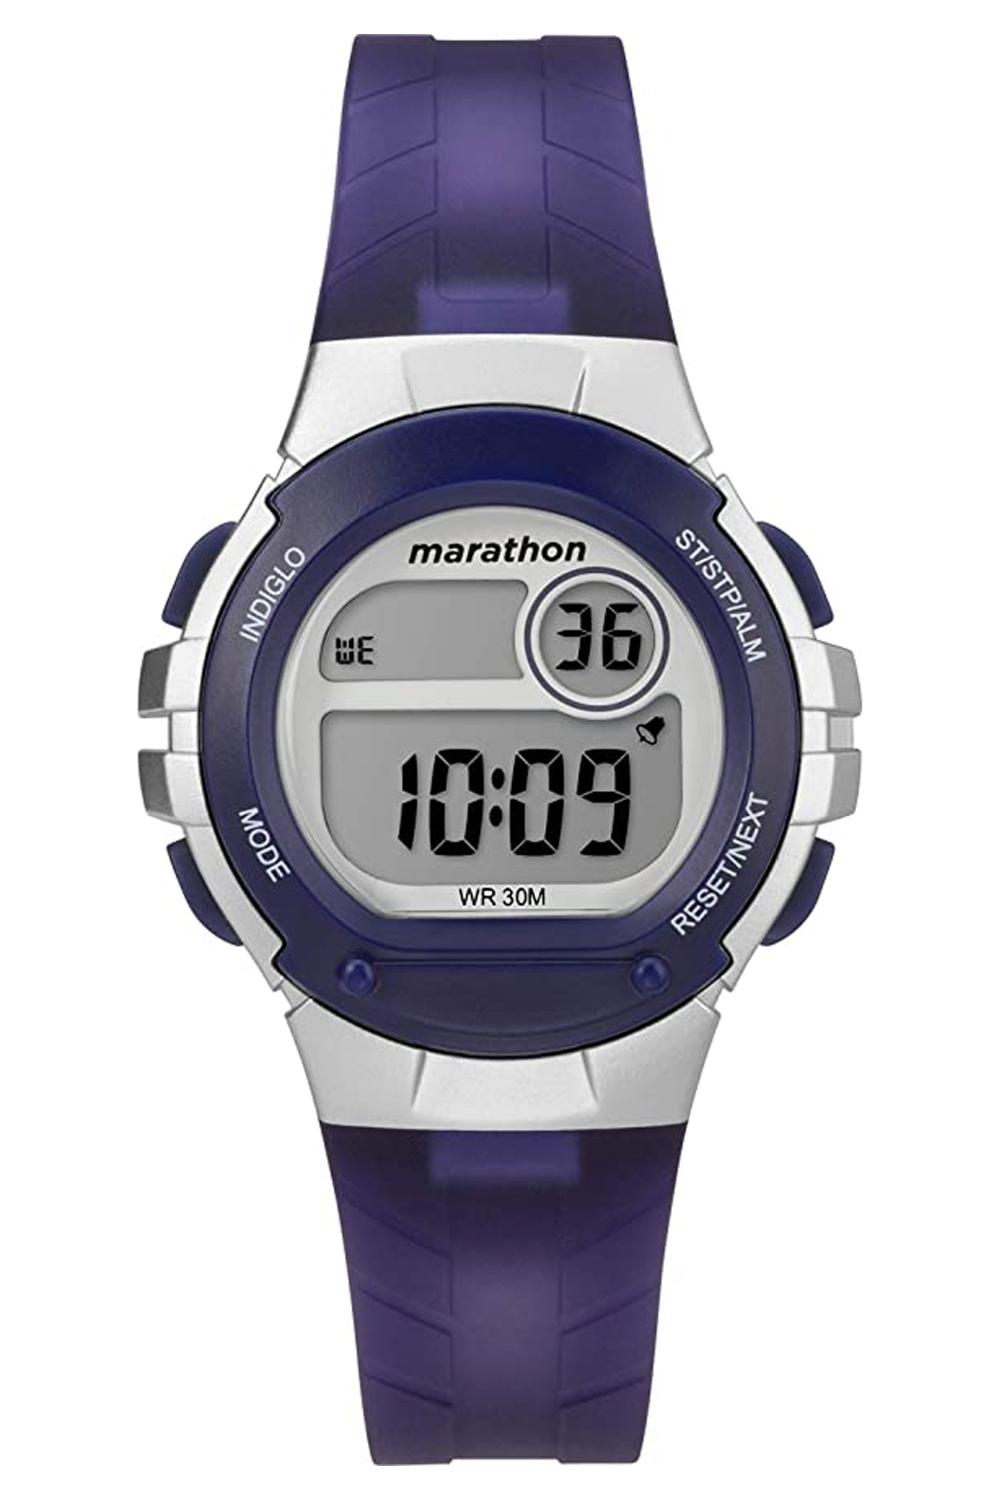 Timex Women's Marathon Digital Watch, Purple